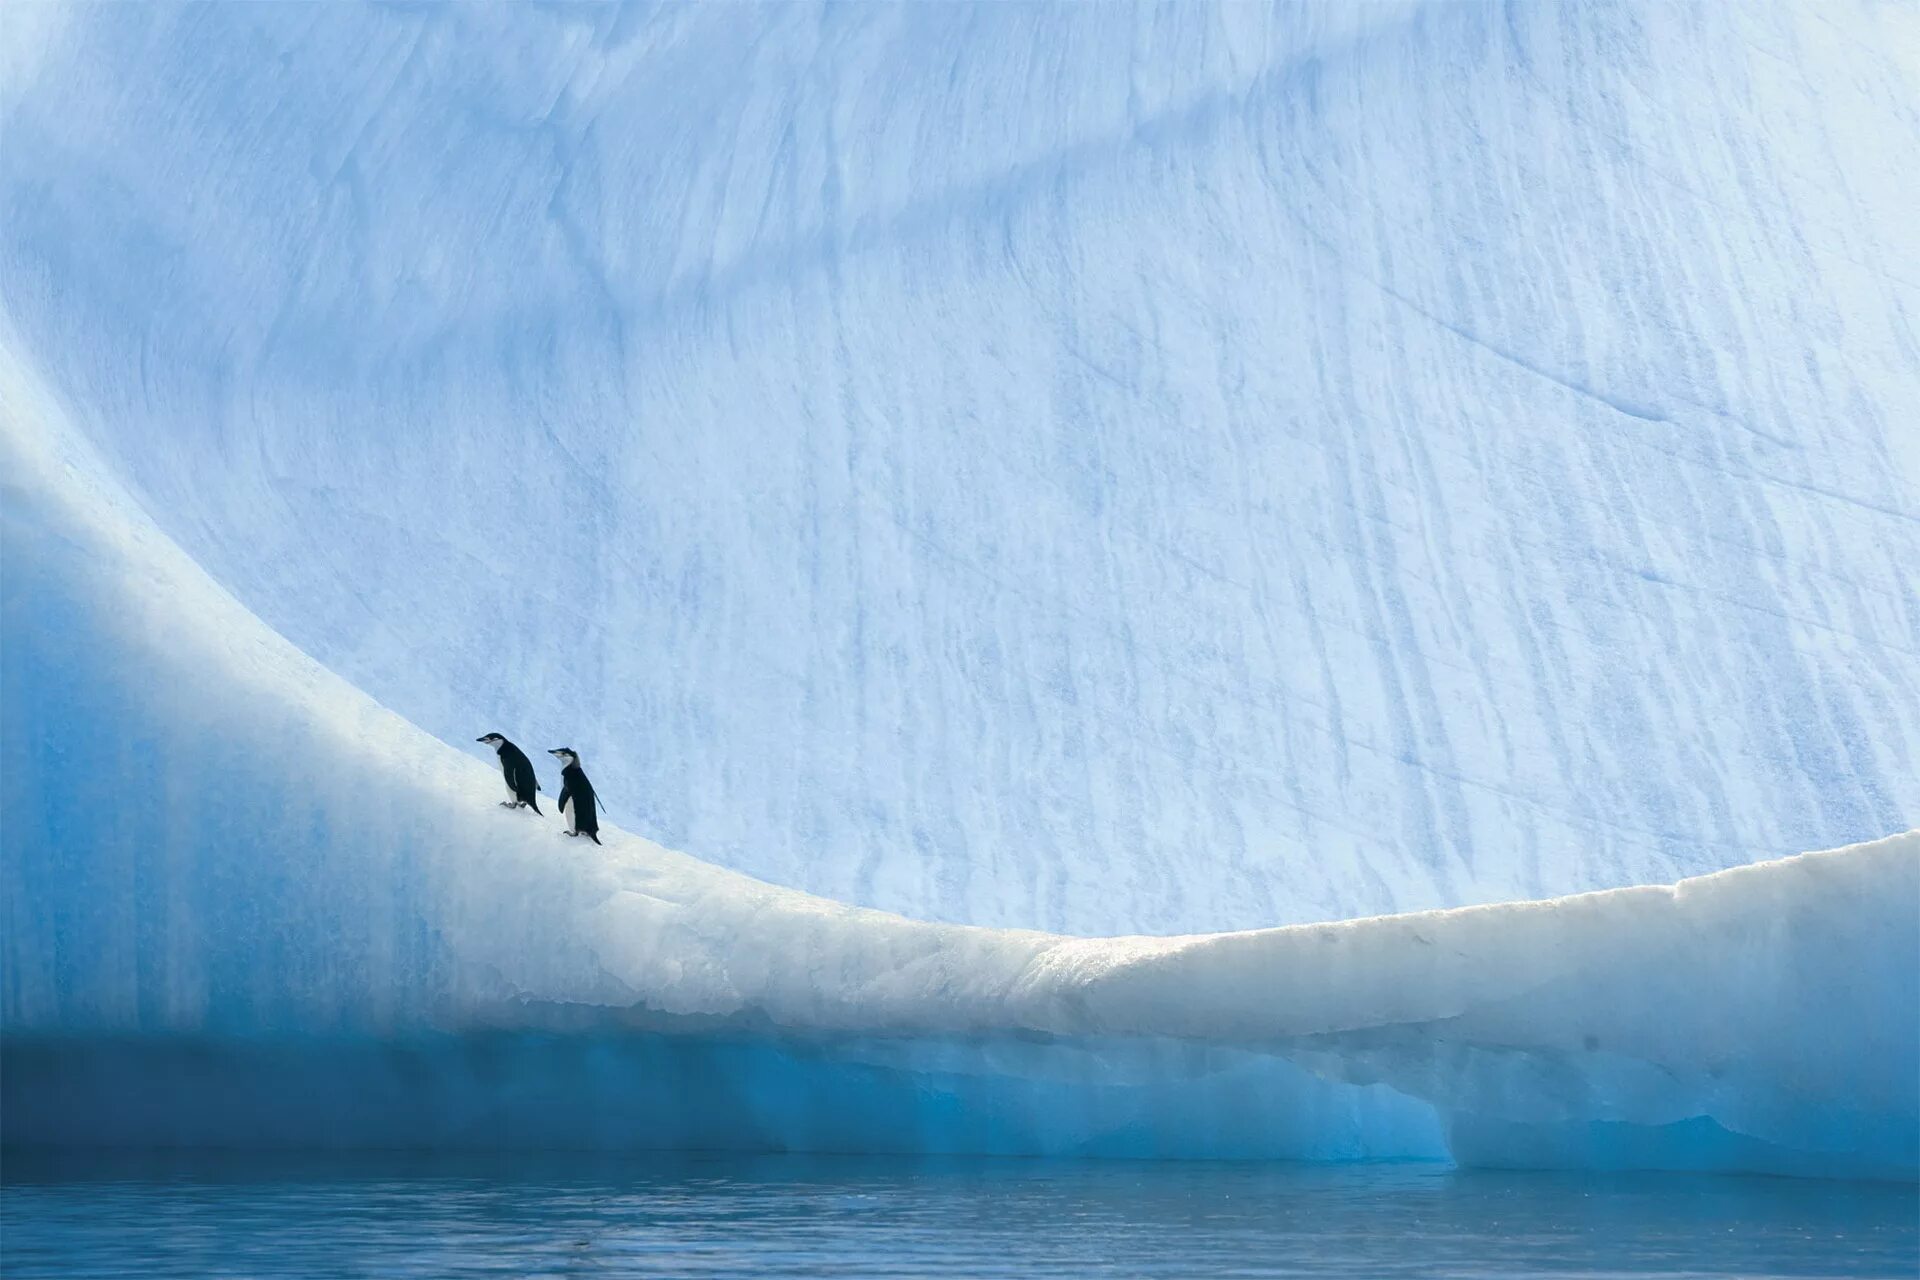 Лед снизу. Пауль Никлен Антарктика. Арктика Антарктика Антарктида. Пол Никлен Полярная одержимость. Антарктида и Северный полюс.